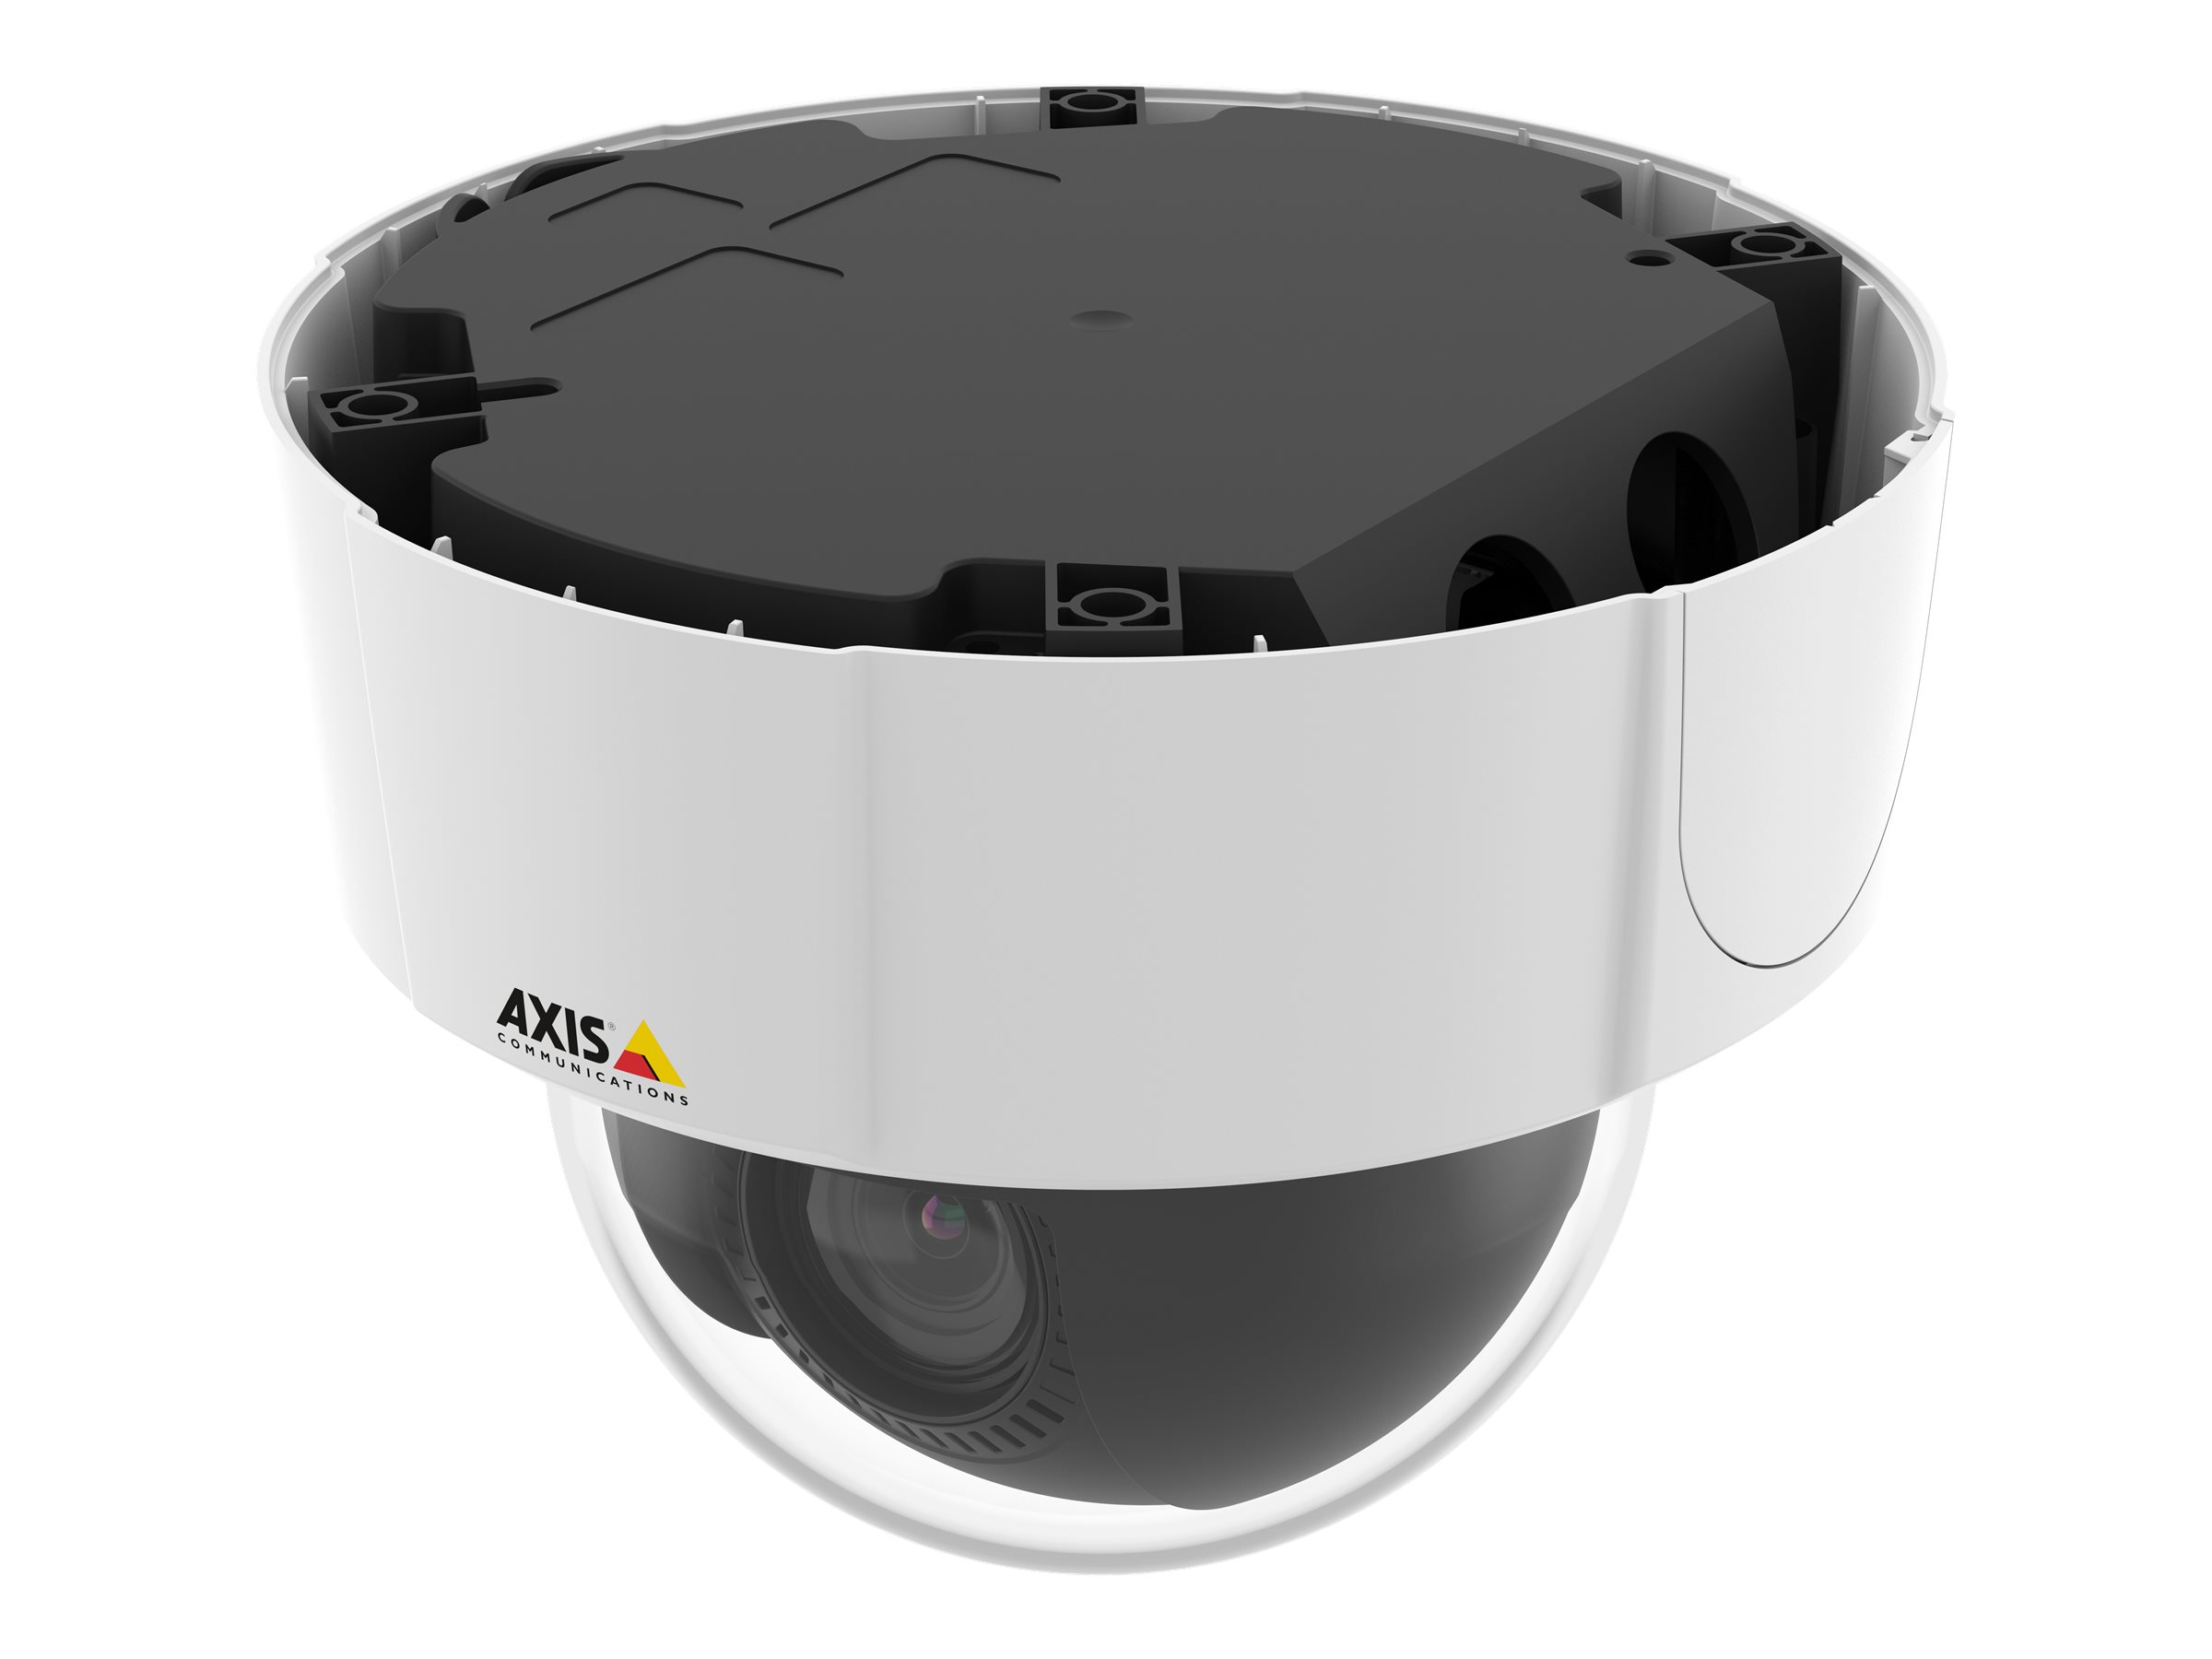 Axis M5525-E Netzwerkkamera PTZ Dome Kompakte PTZ Dome Kamera / HDTV 1080p 1920x1080 / 10x optischer Zoom / 360 Schwenken / WDR / IP66, PoE & 24V / Bildrate max. 25fps in H.264 & Motion JPEG / Duales Audio, 4 I/O / PoE Injektor nicht im Lieferumfang!